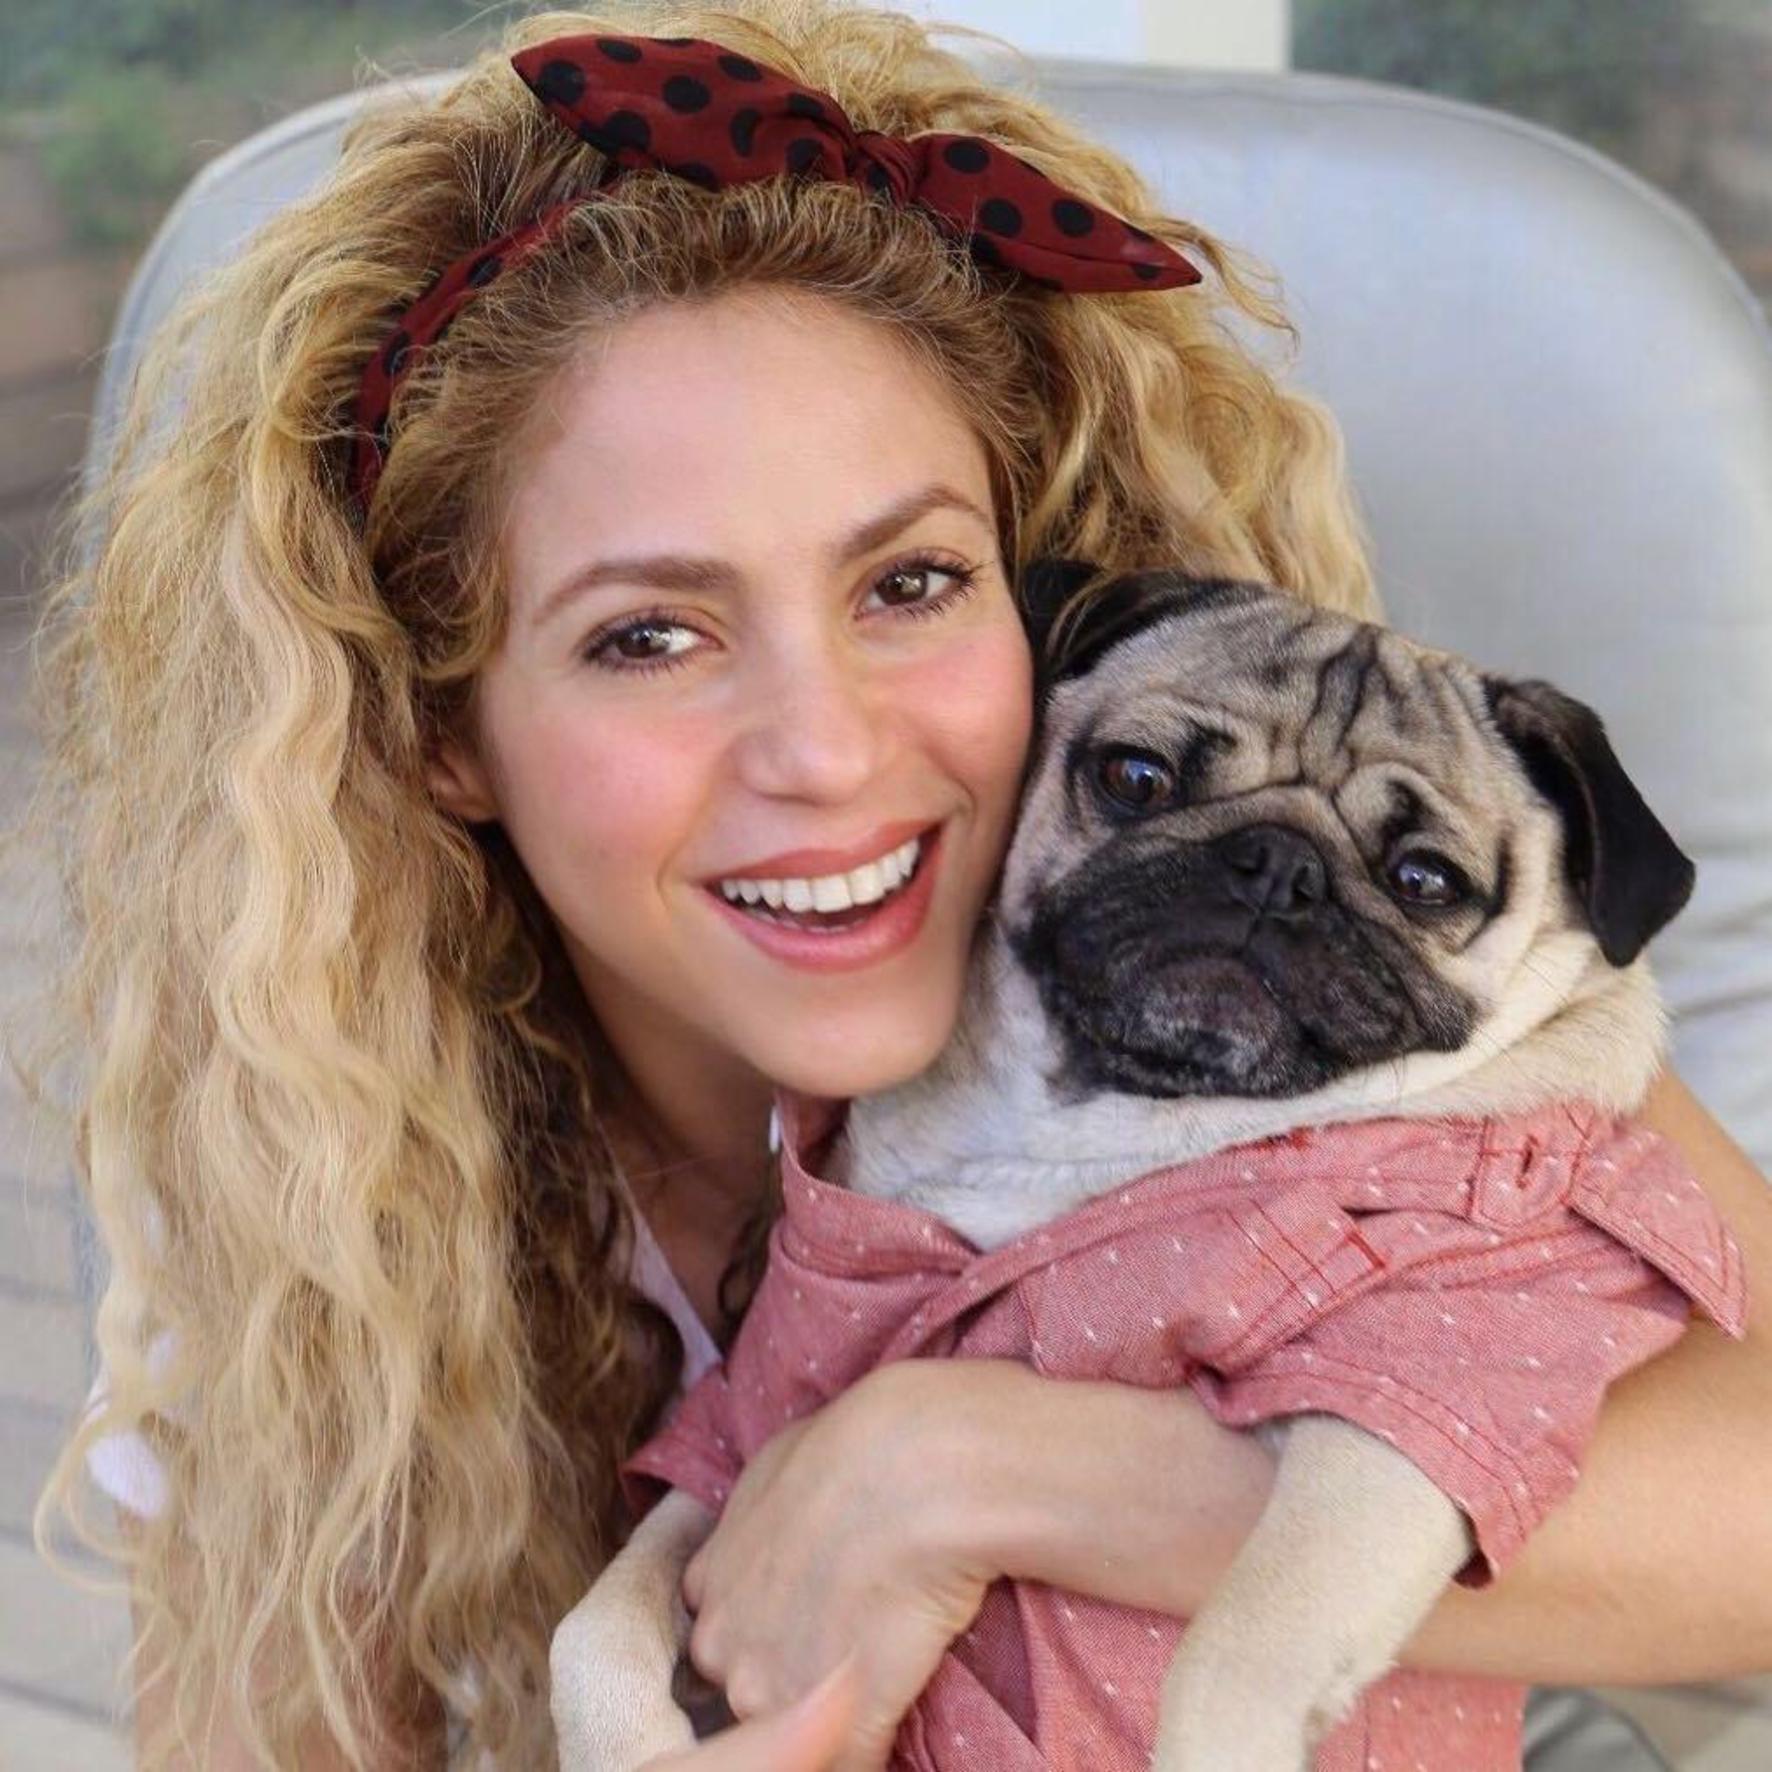 Shakira riscă până la 2 ani de ÎNCHISOARE! Ce decizie a luat artista în disputa cu fiscul spaniol?!